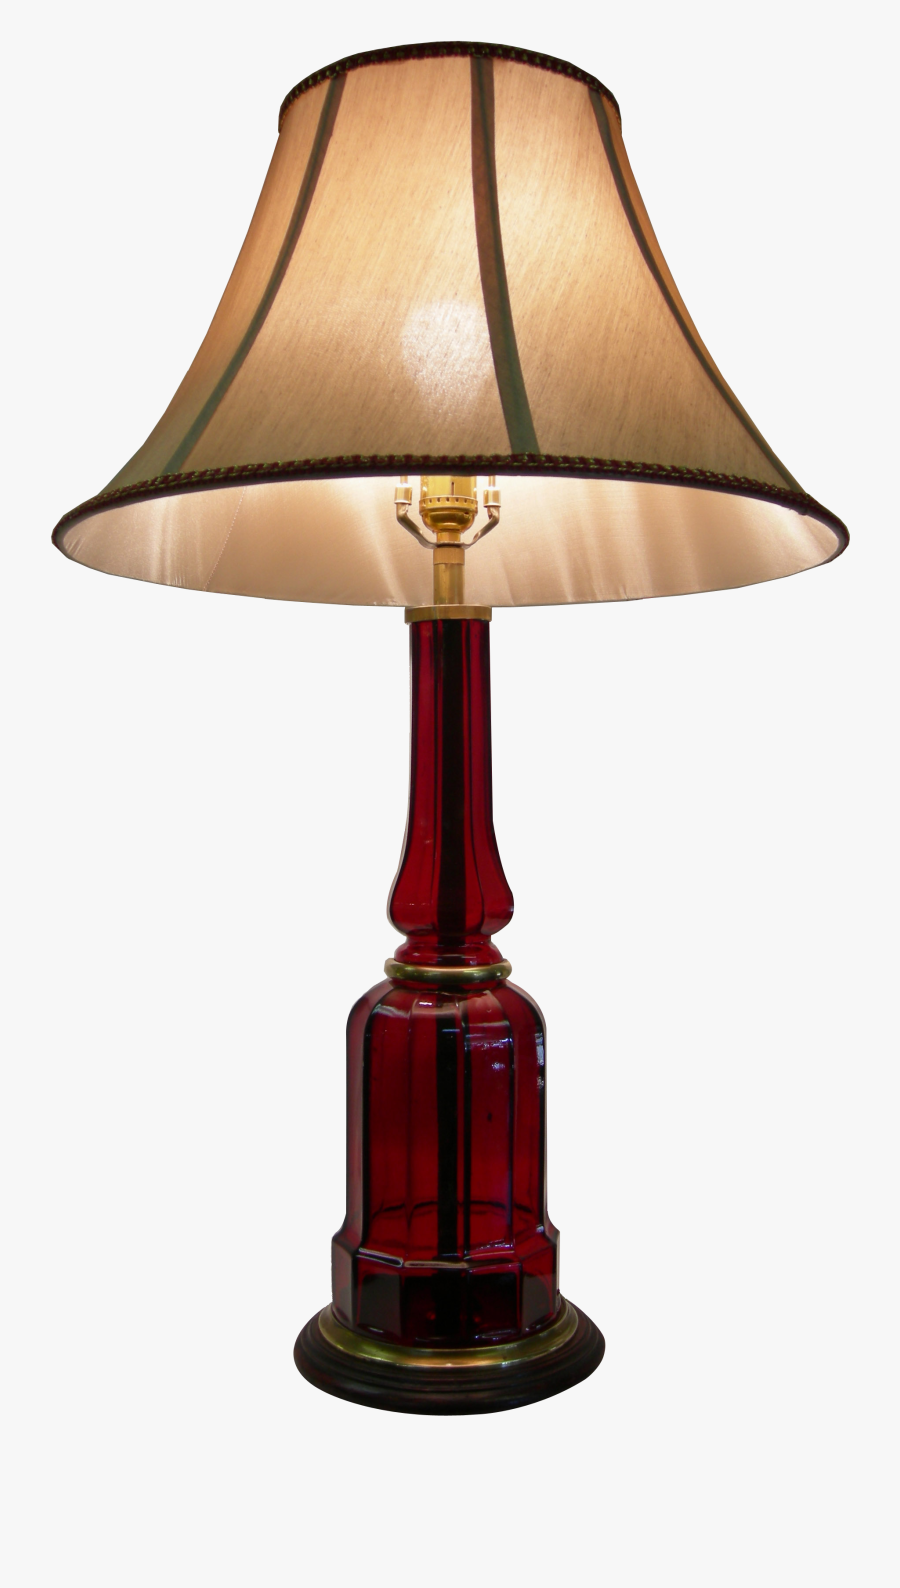 Lamp Clipart Best Png - Lamp Png, Transparent Clipart